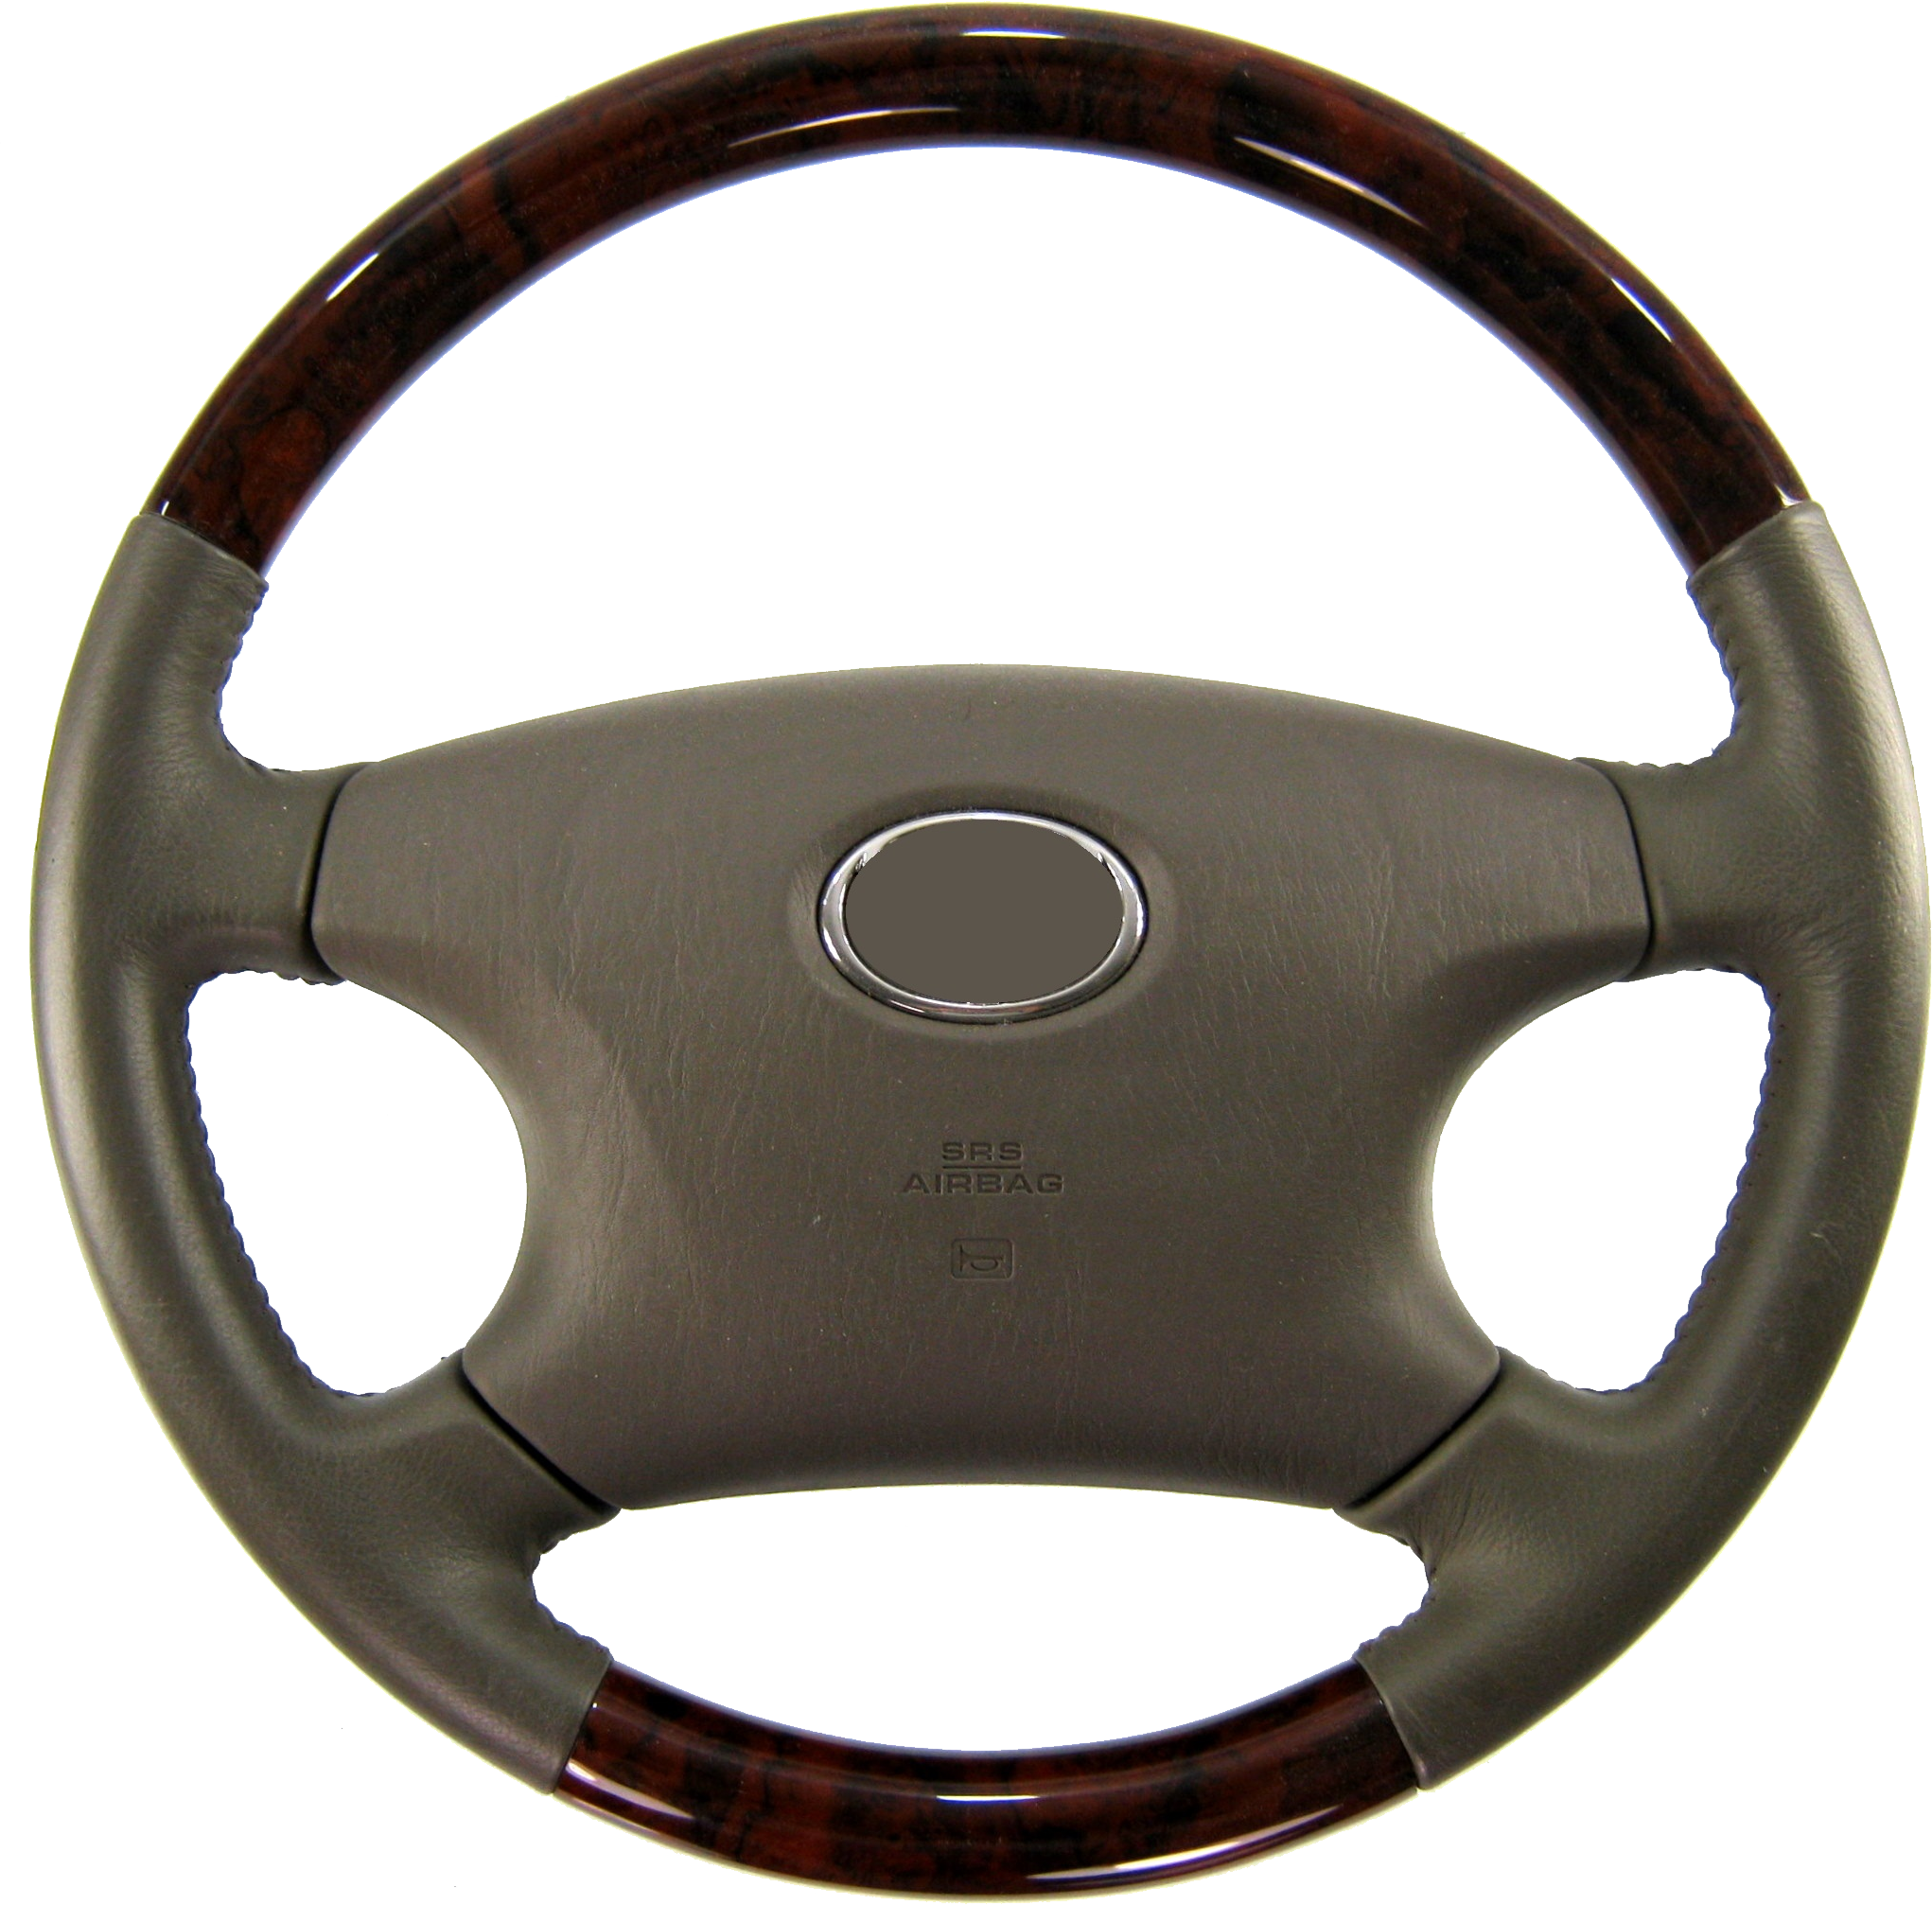 Steering Wheel Png - Steeringwheel, Transparent background PNG HD thumbnail